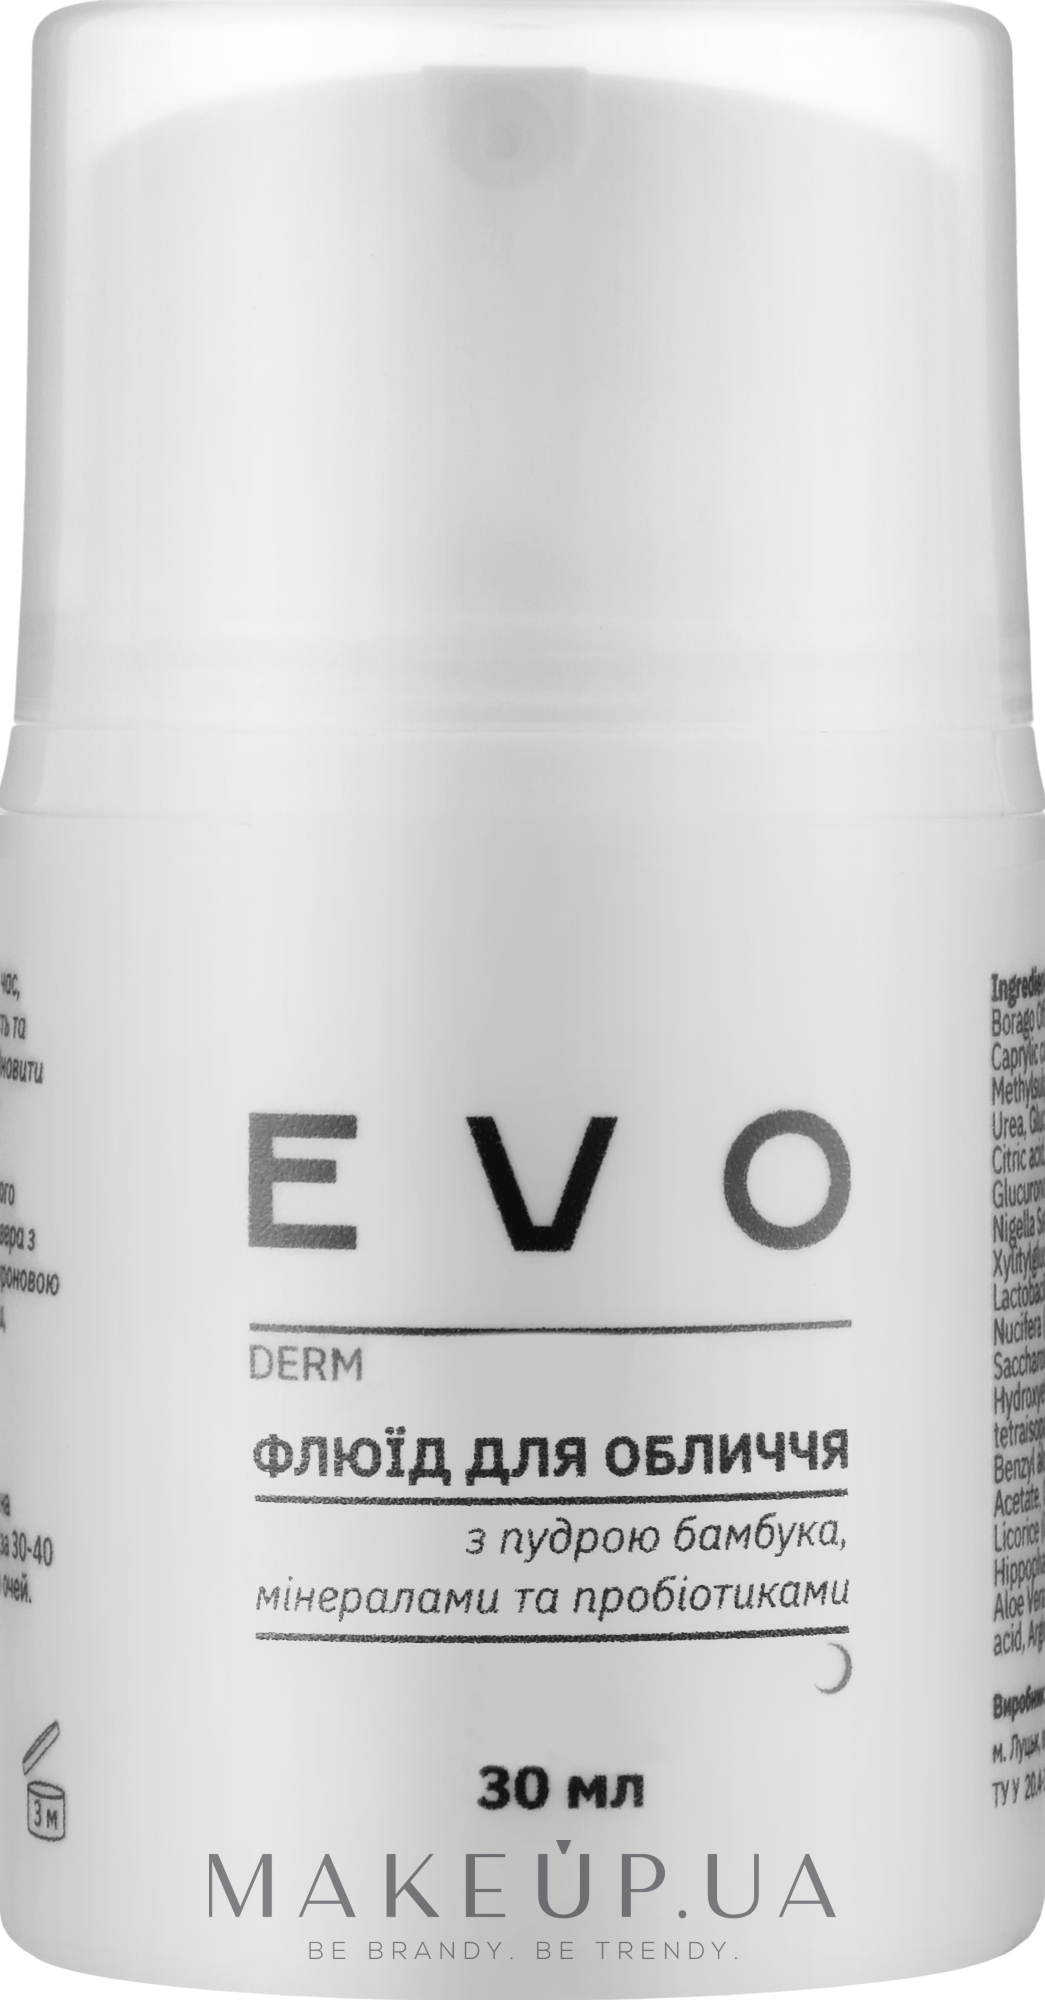 Флюид для лица с пудрой бамбука, минералами и пробиотиками - EVO derm — фото 30ml